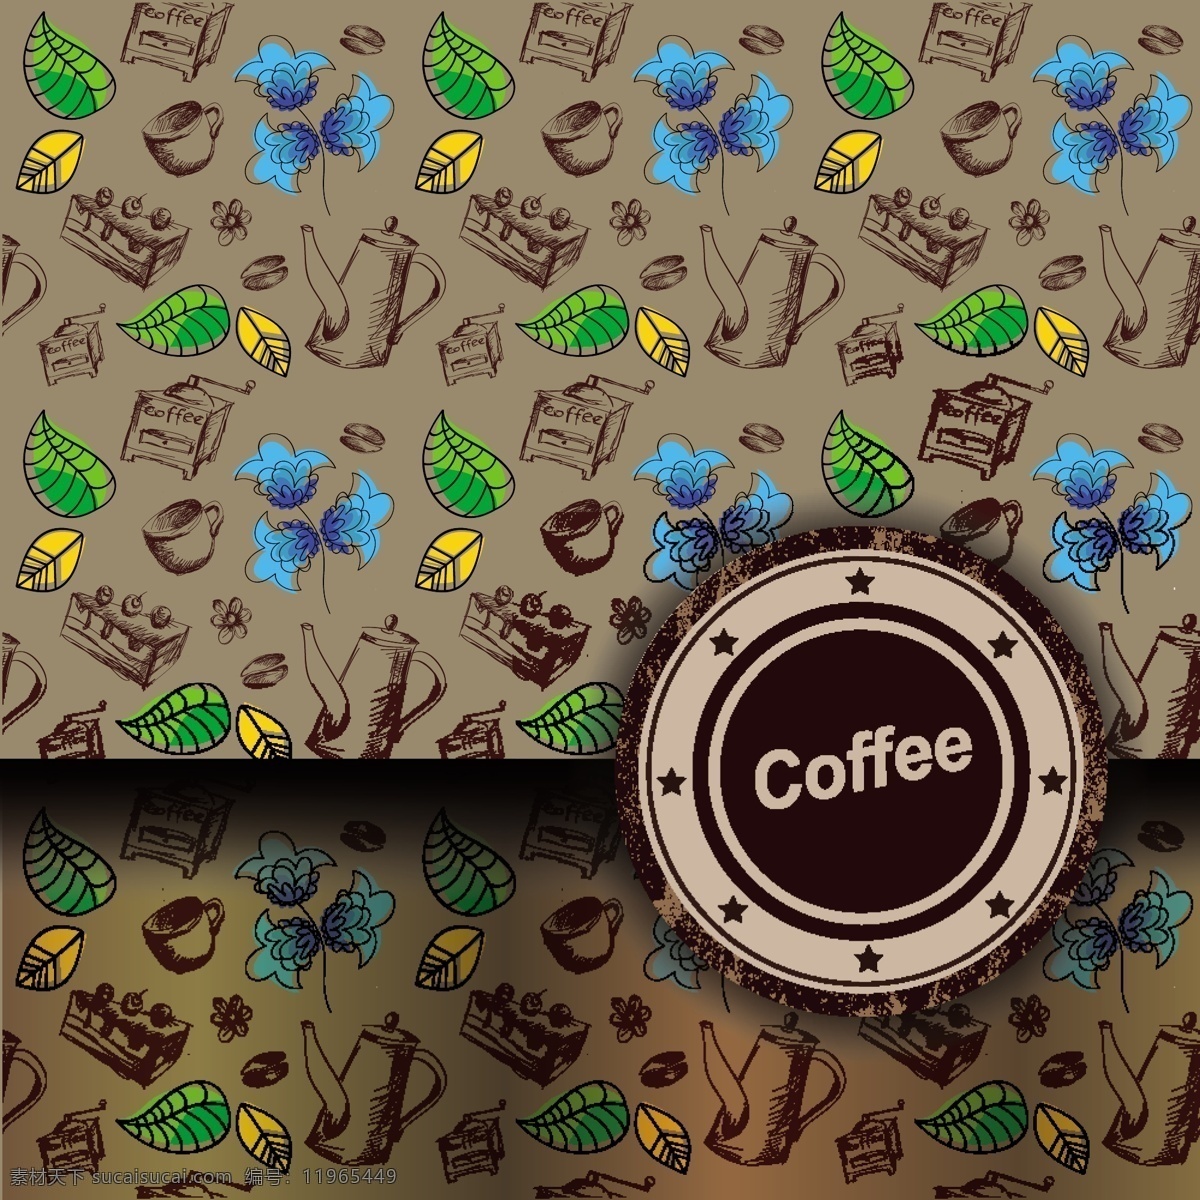 漂亮 咖啡 主题 coffee 杯子 背景 标贴 插画 创意 花朵 咖啡豆 咖啡机 线稿 手绘 瓶贴 叶子 水壶 矢量素材 矢量图 日常生活